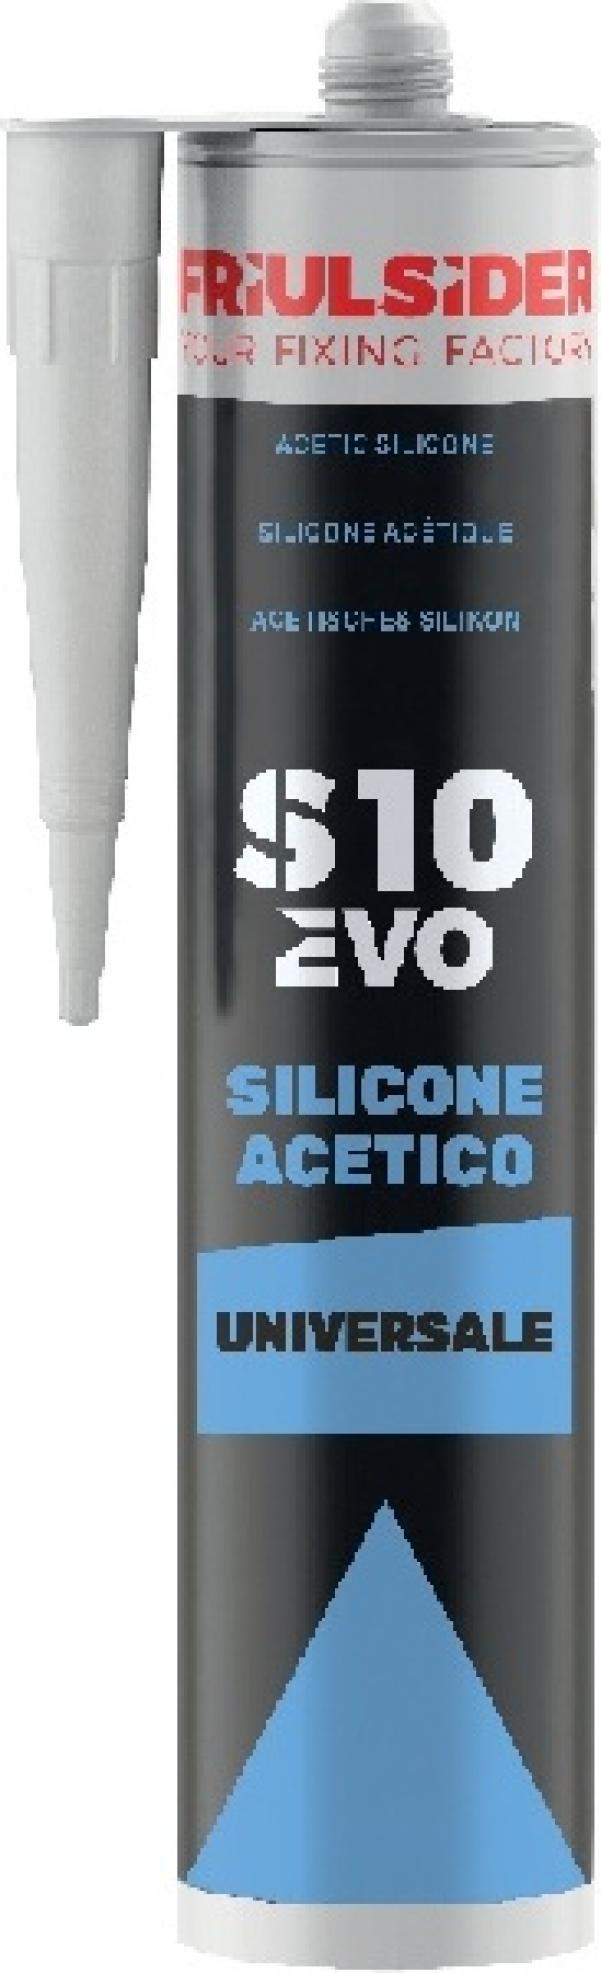 FRIULSIDER Silicone acetico trasparente S10 EVO 280 ml Friulsider S1000E